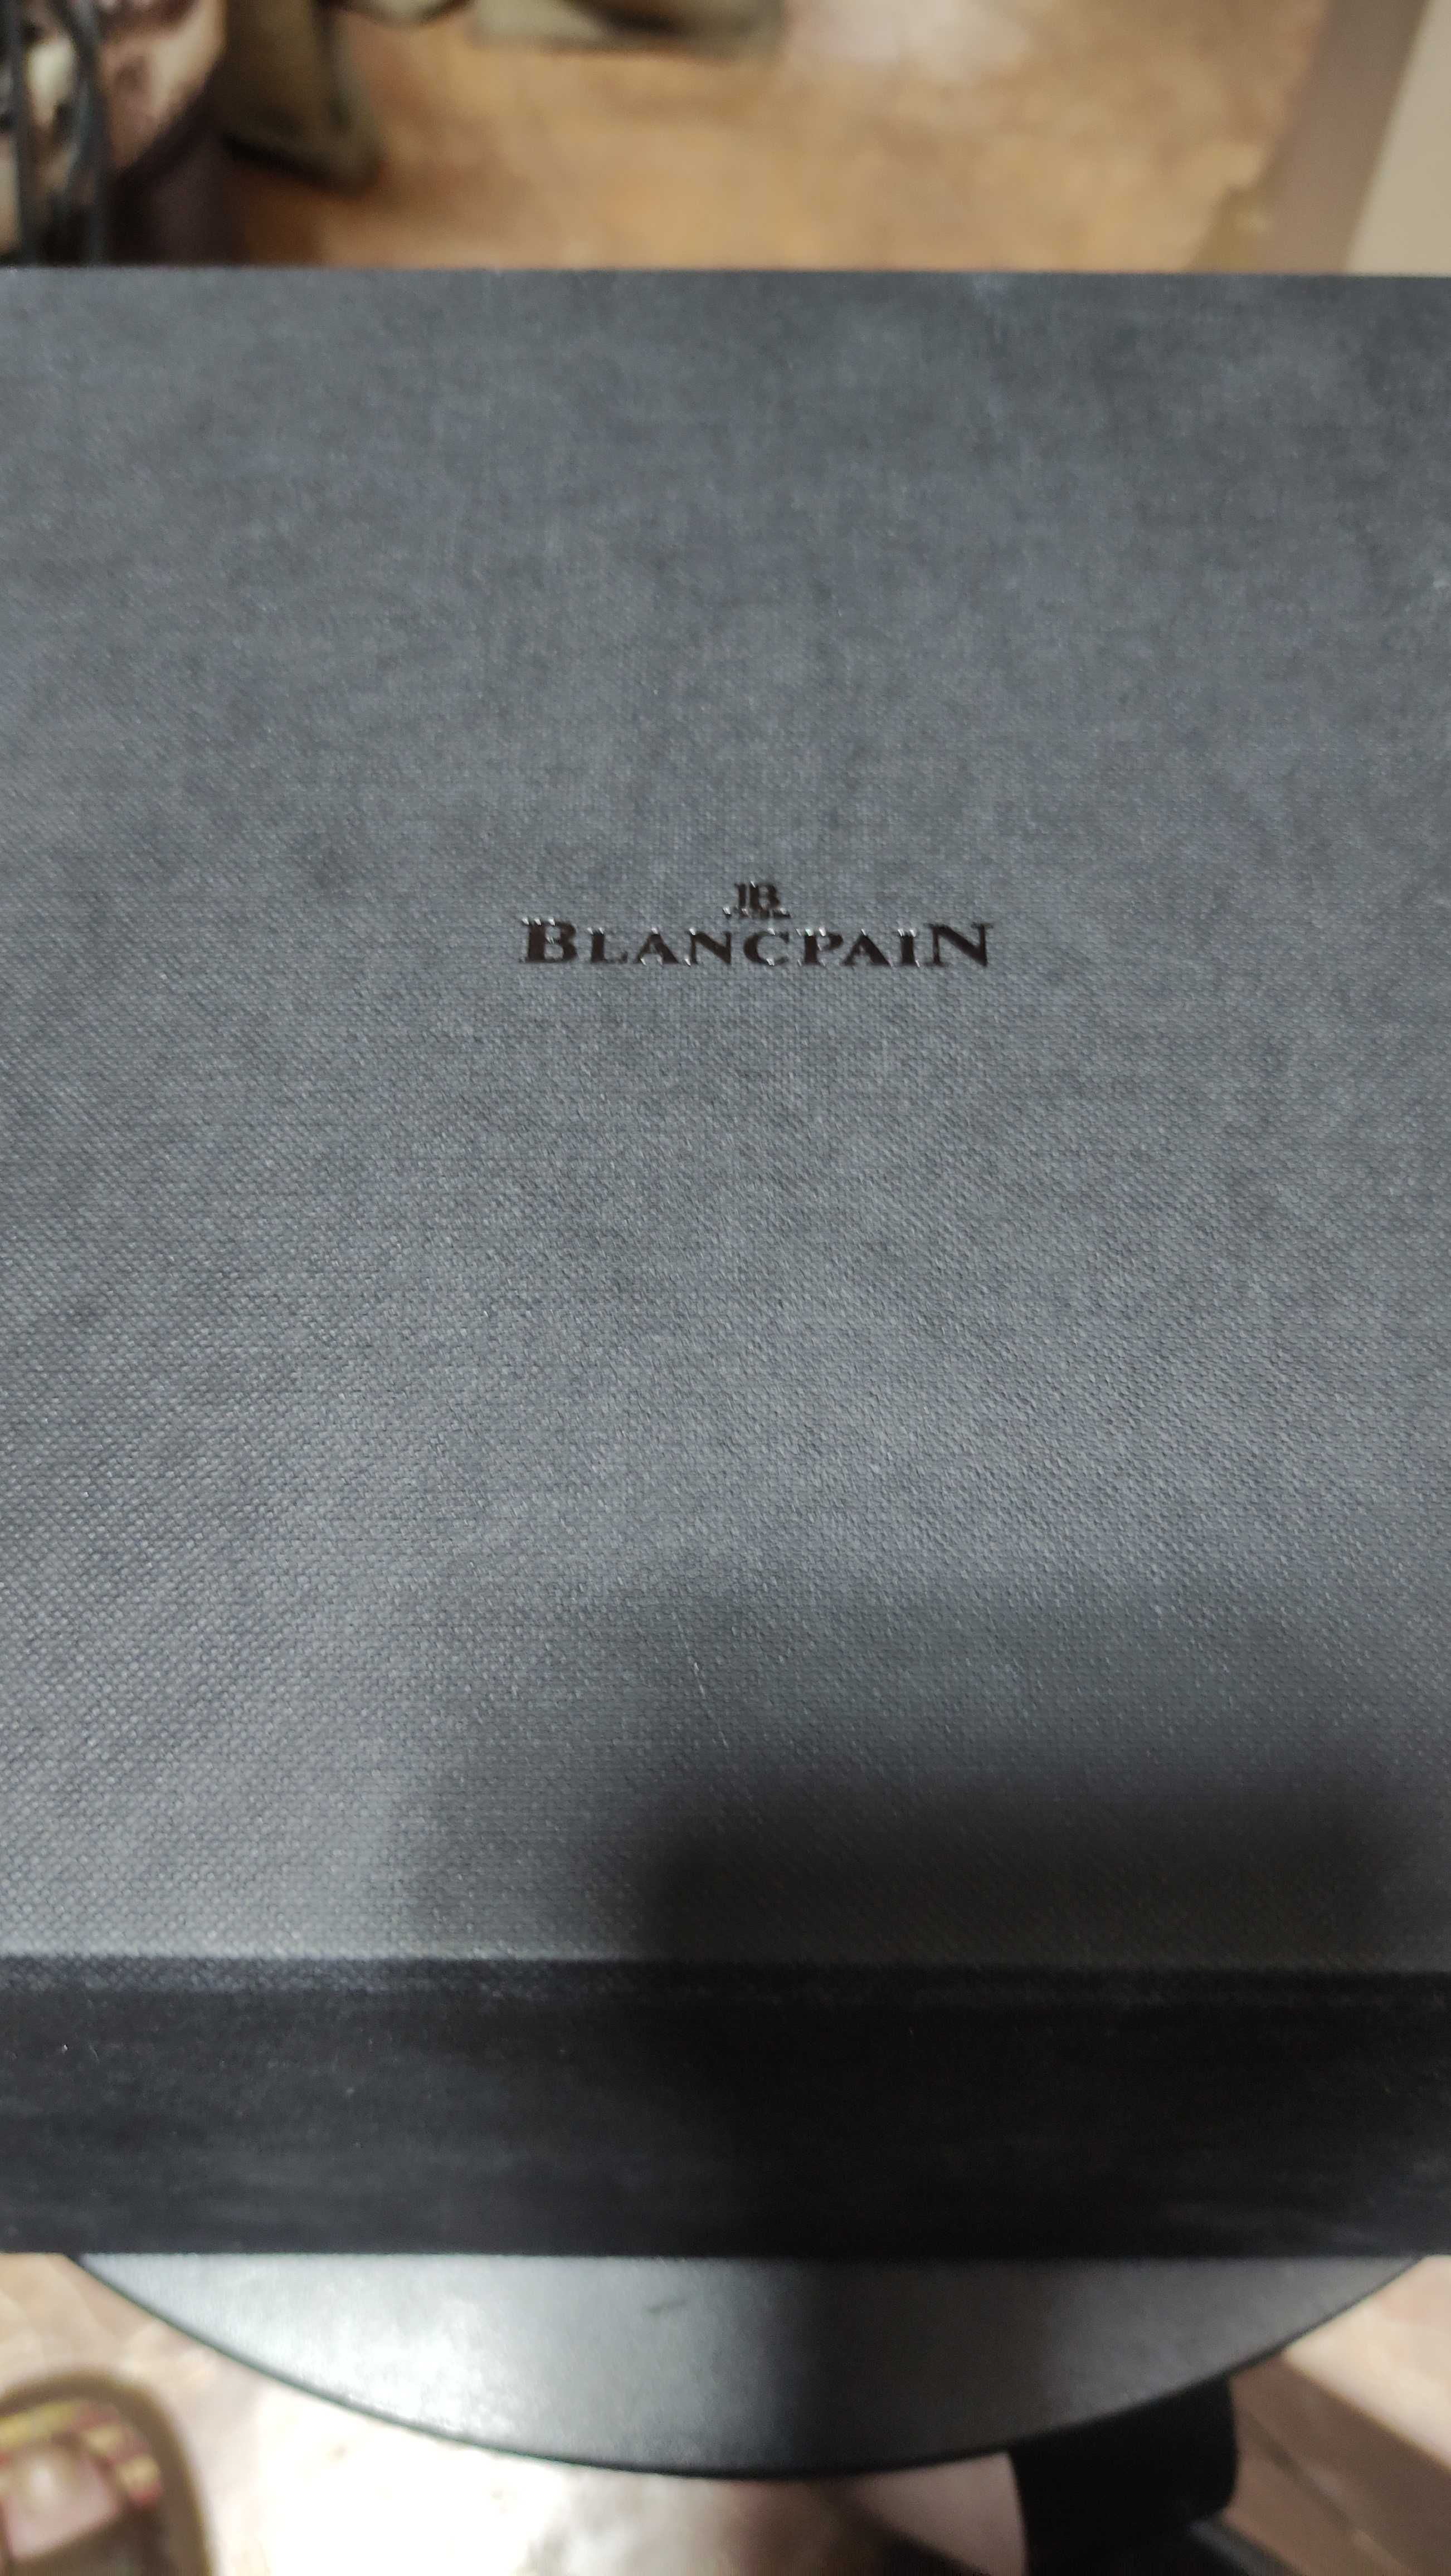 Продам коробку для часов BlancpaiN